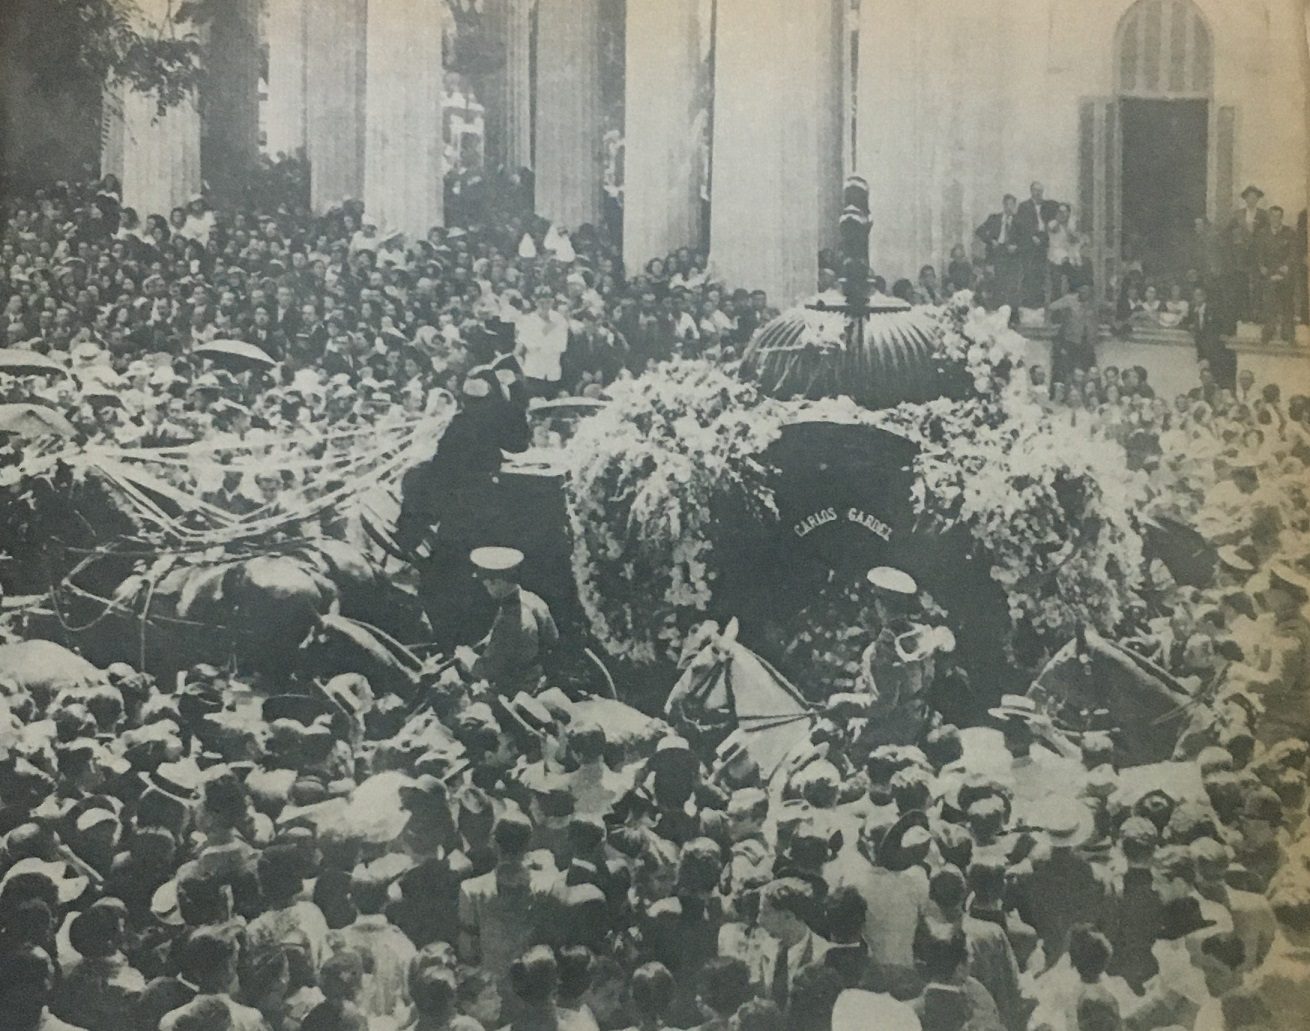 Escenas del entierro de Carlos Gardel en Buenos Aires. El célebre cantante murió trágicamente en Medellín, Colombia, el 24 de junio de 1935, pero sus restos fueron enviados a Argentina en febrero de 1936